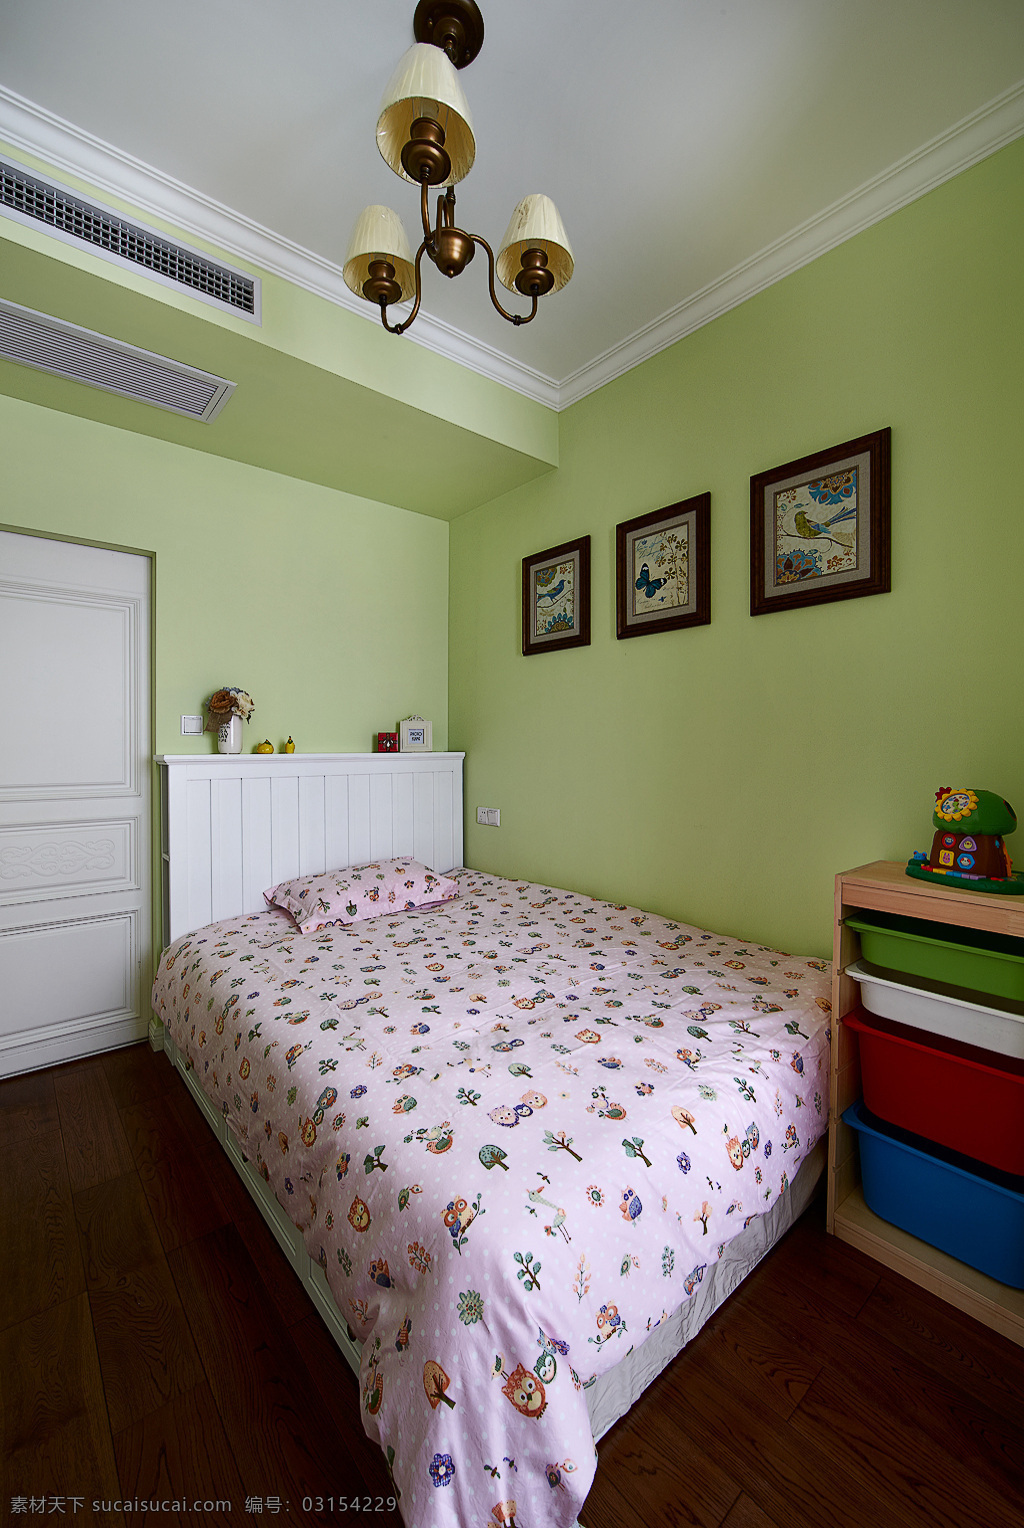 绿色 墙壁 卧室 效果图 儿童房 家具 家装 室内背景 家居装饰 华丽装修 室内设计 软装设计